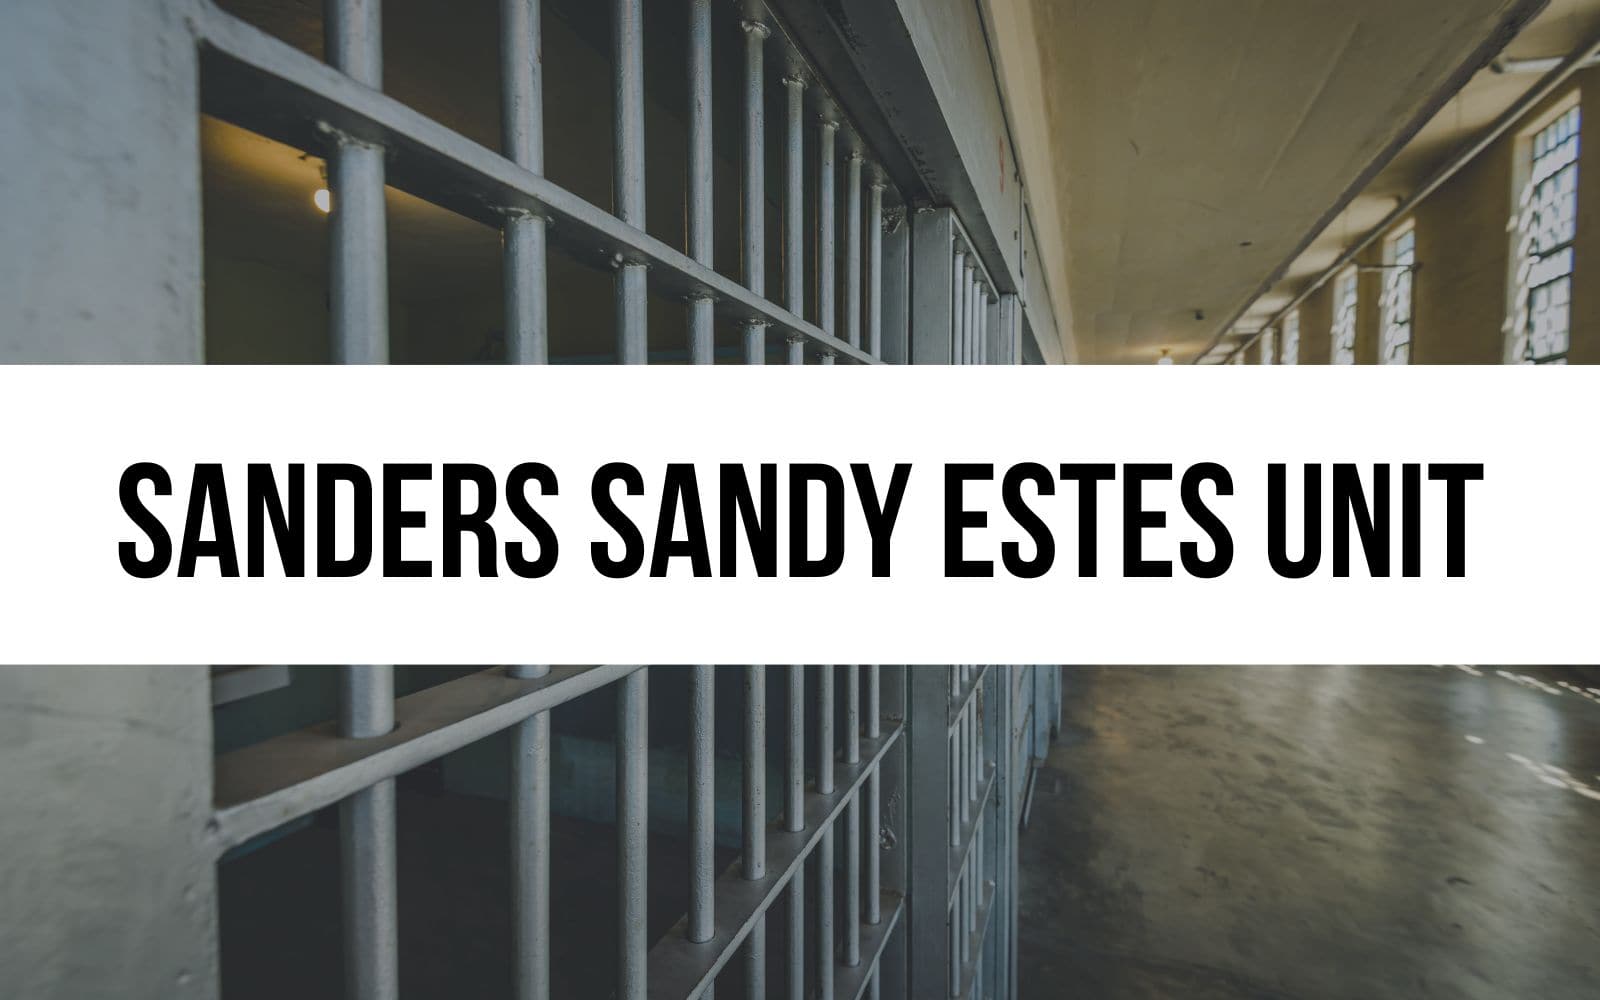 Sanders Sandy Estes Unit